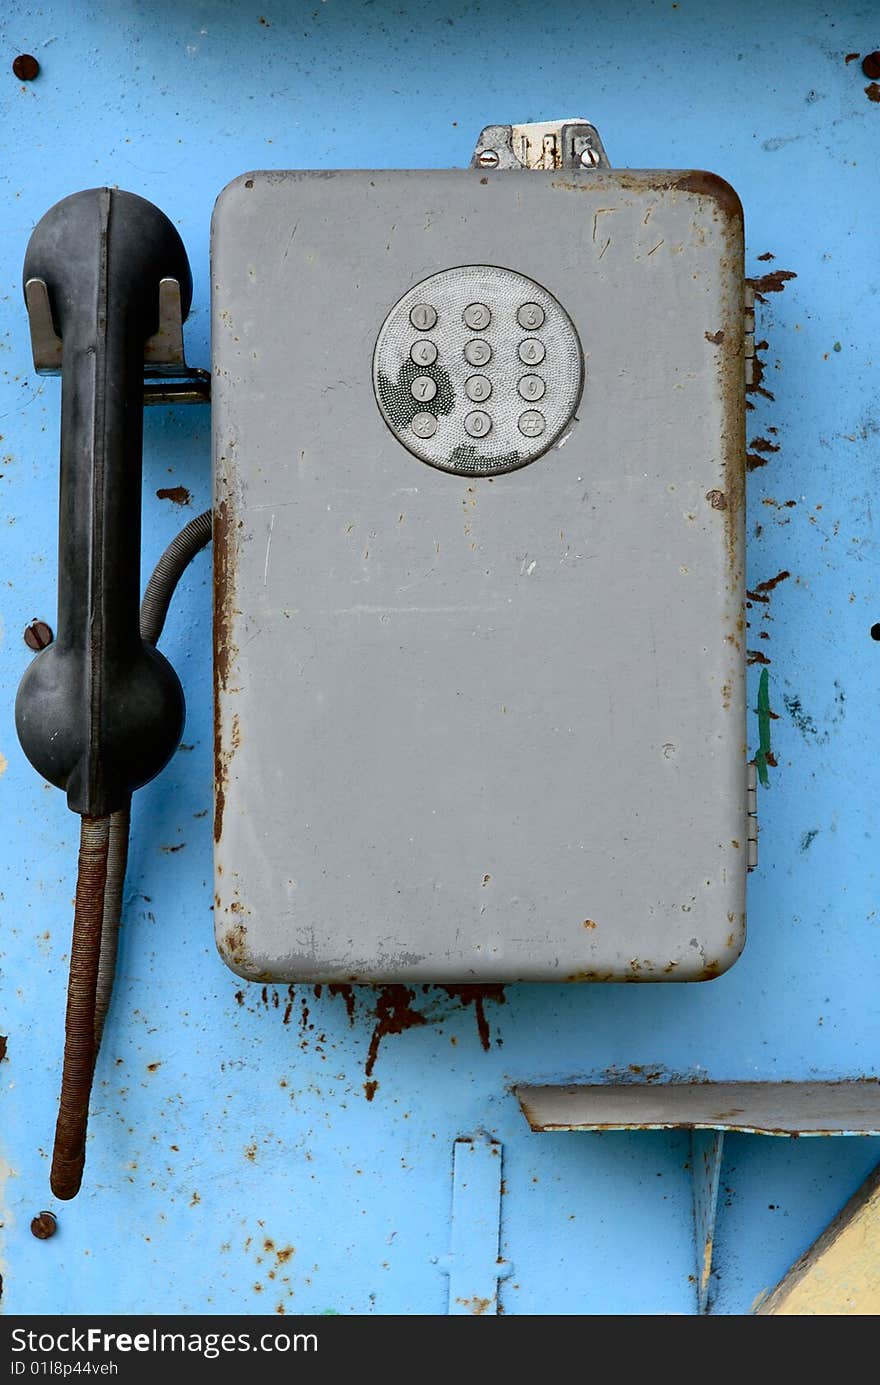 It is a old public phone. It is a old public phone